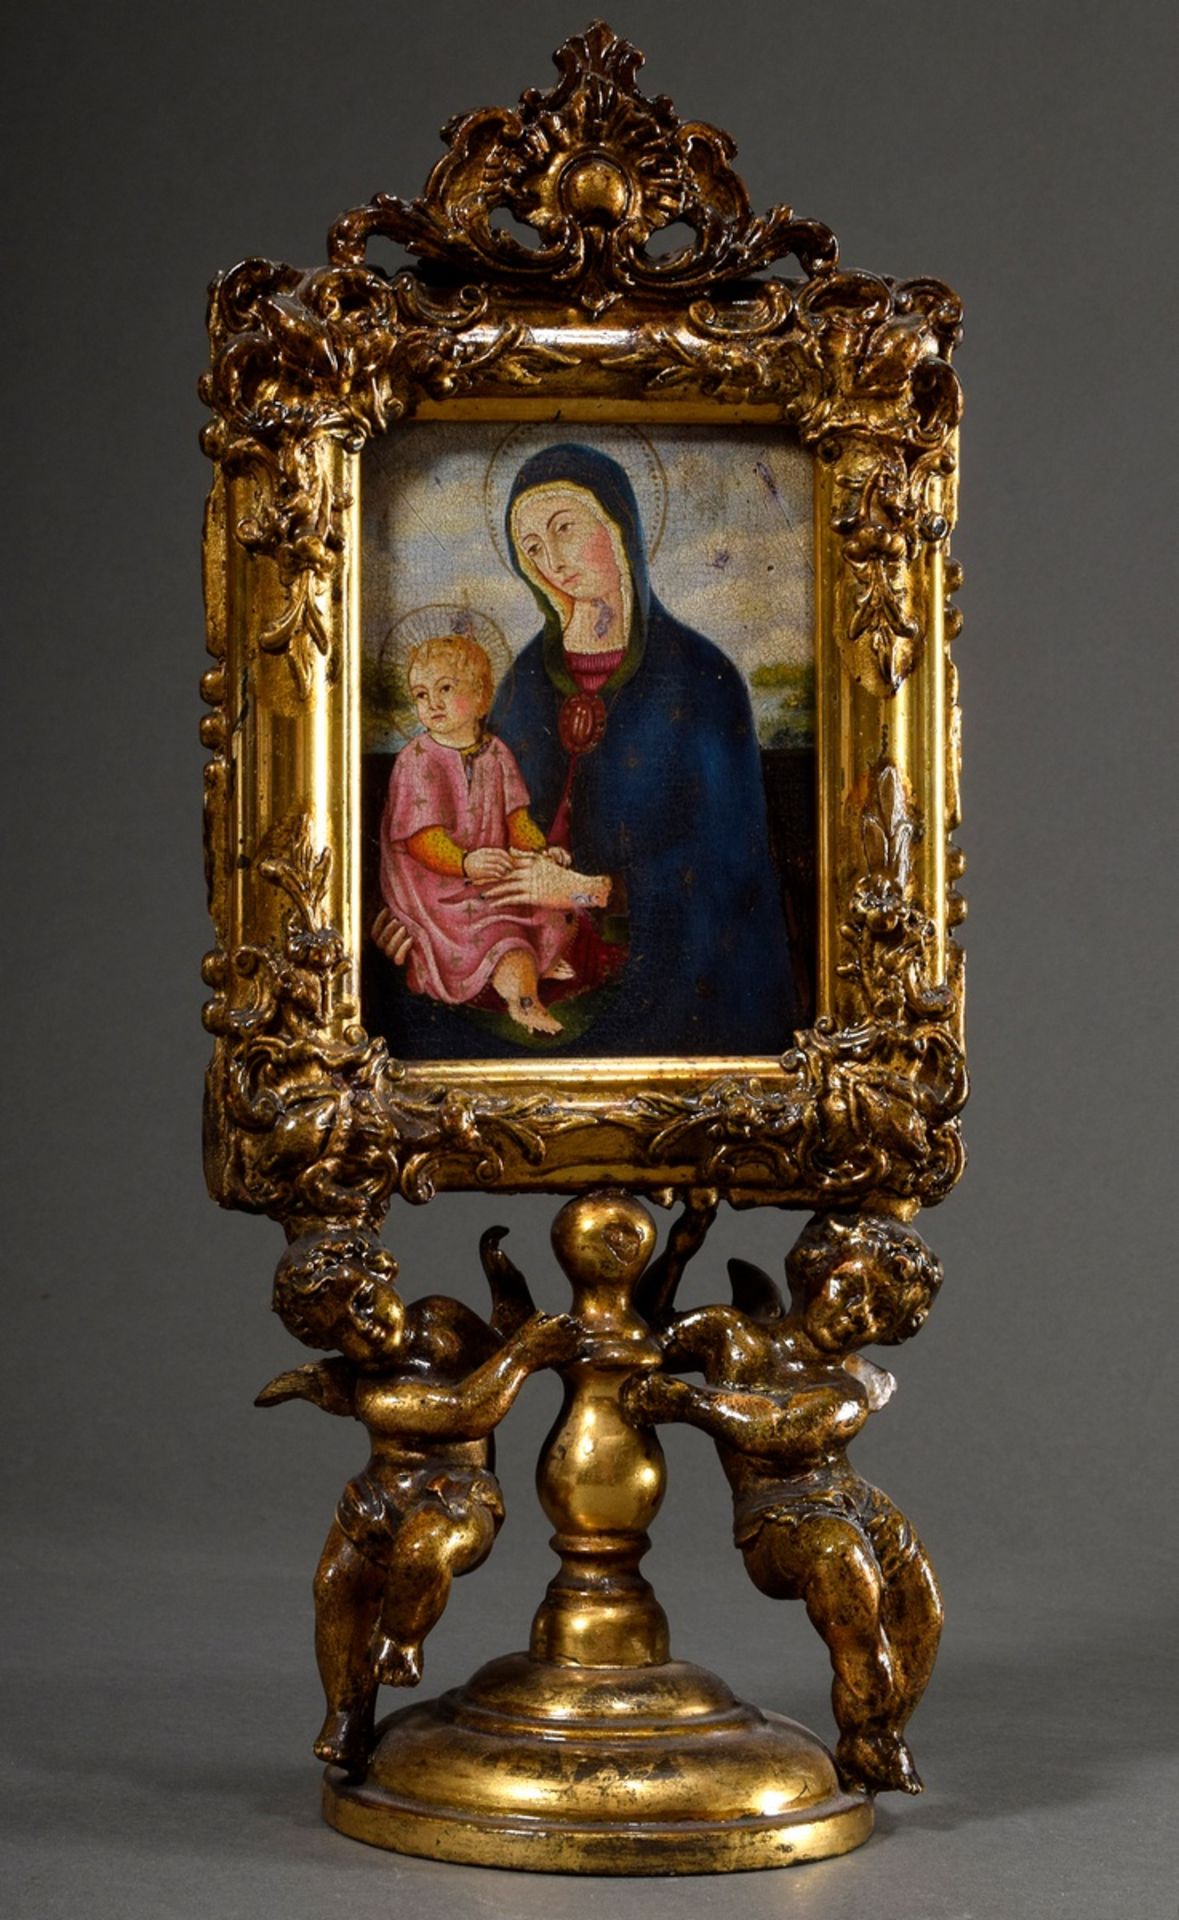 Sakrales Tafelbild "Muttergottes" in figürlichem Präsentoir mit zwei Engeln, Holz vergoldet, 18./19